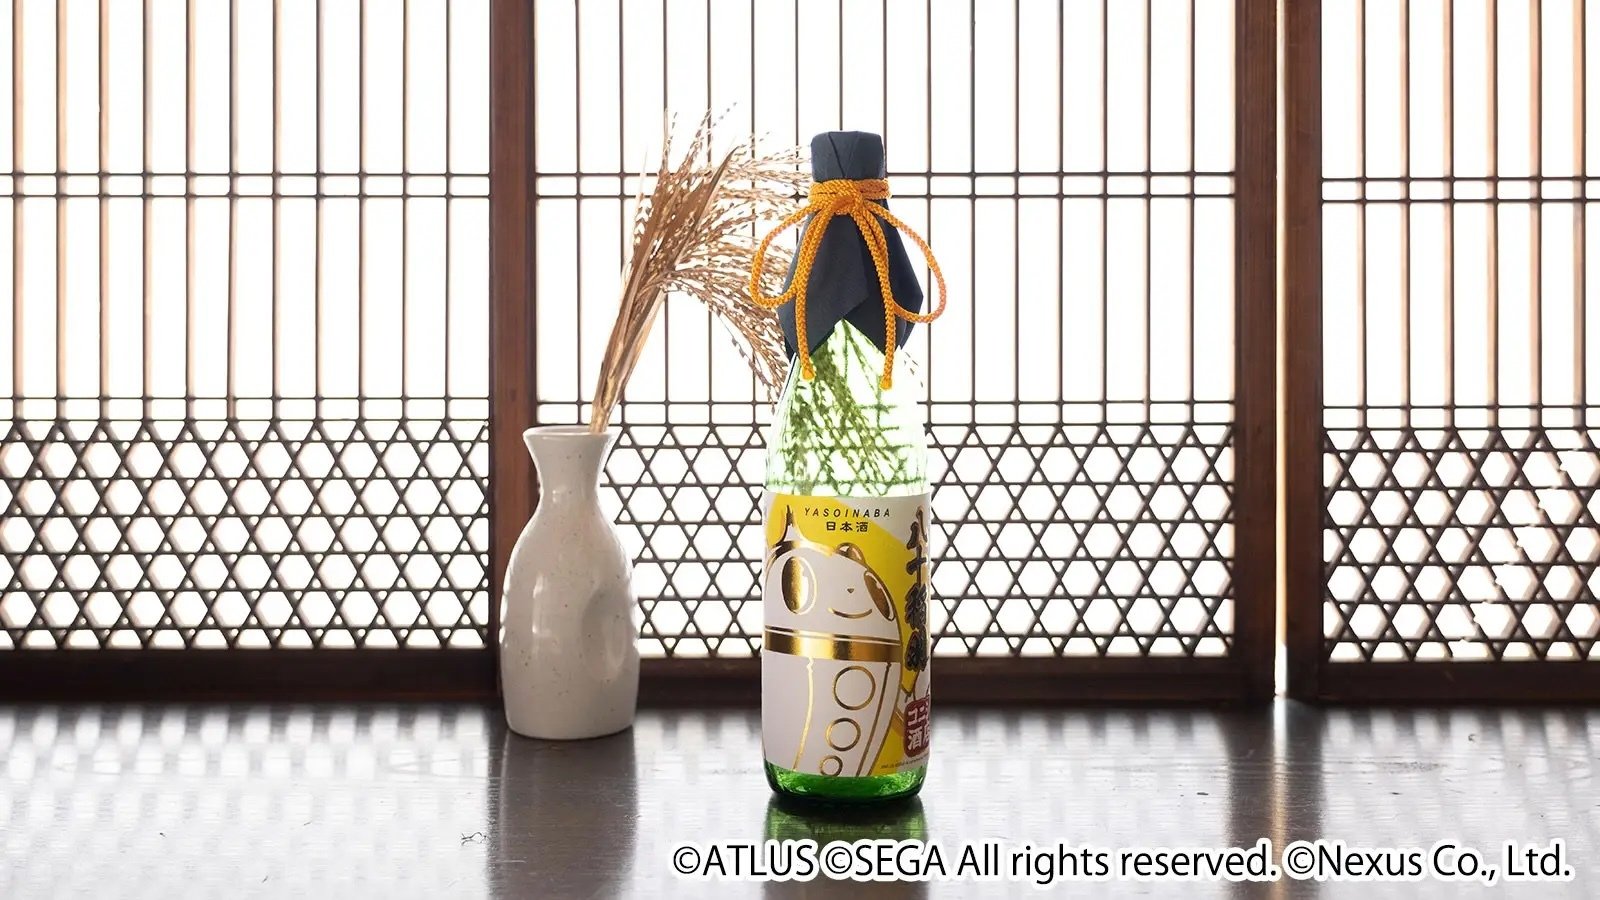  コラボ日本酒"純米大吟醸 八十稲羽"